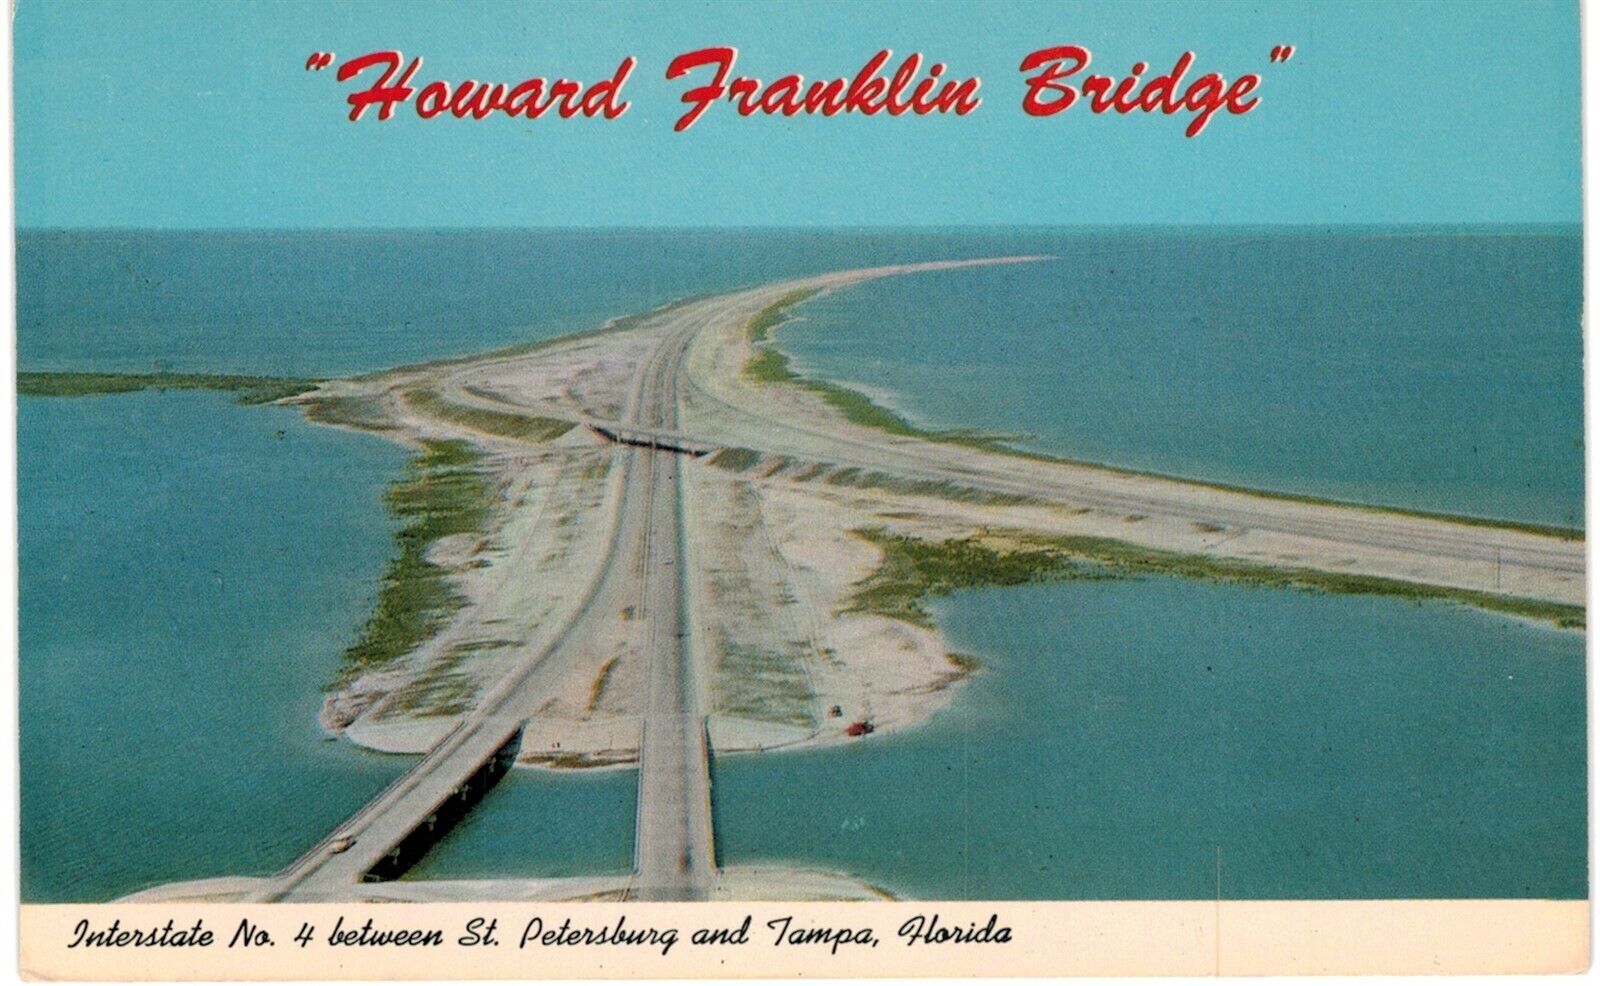 St Petersburg Tampa Franklin Bridge I 4 1960 FL 